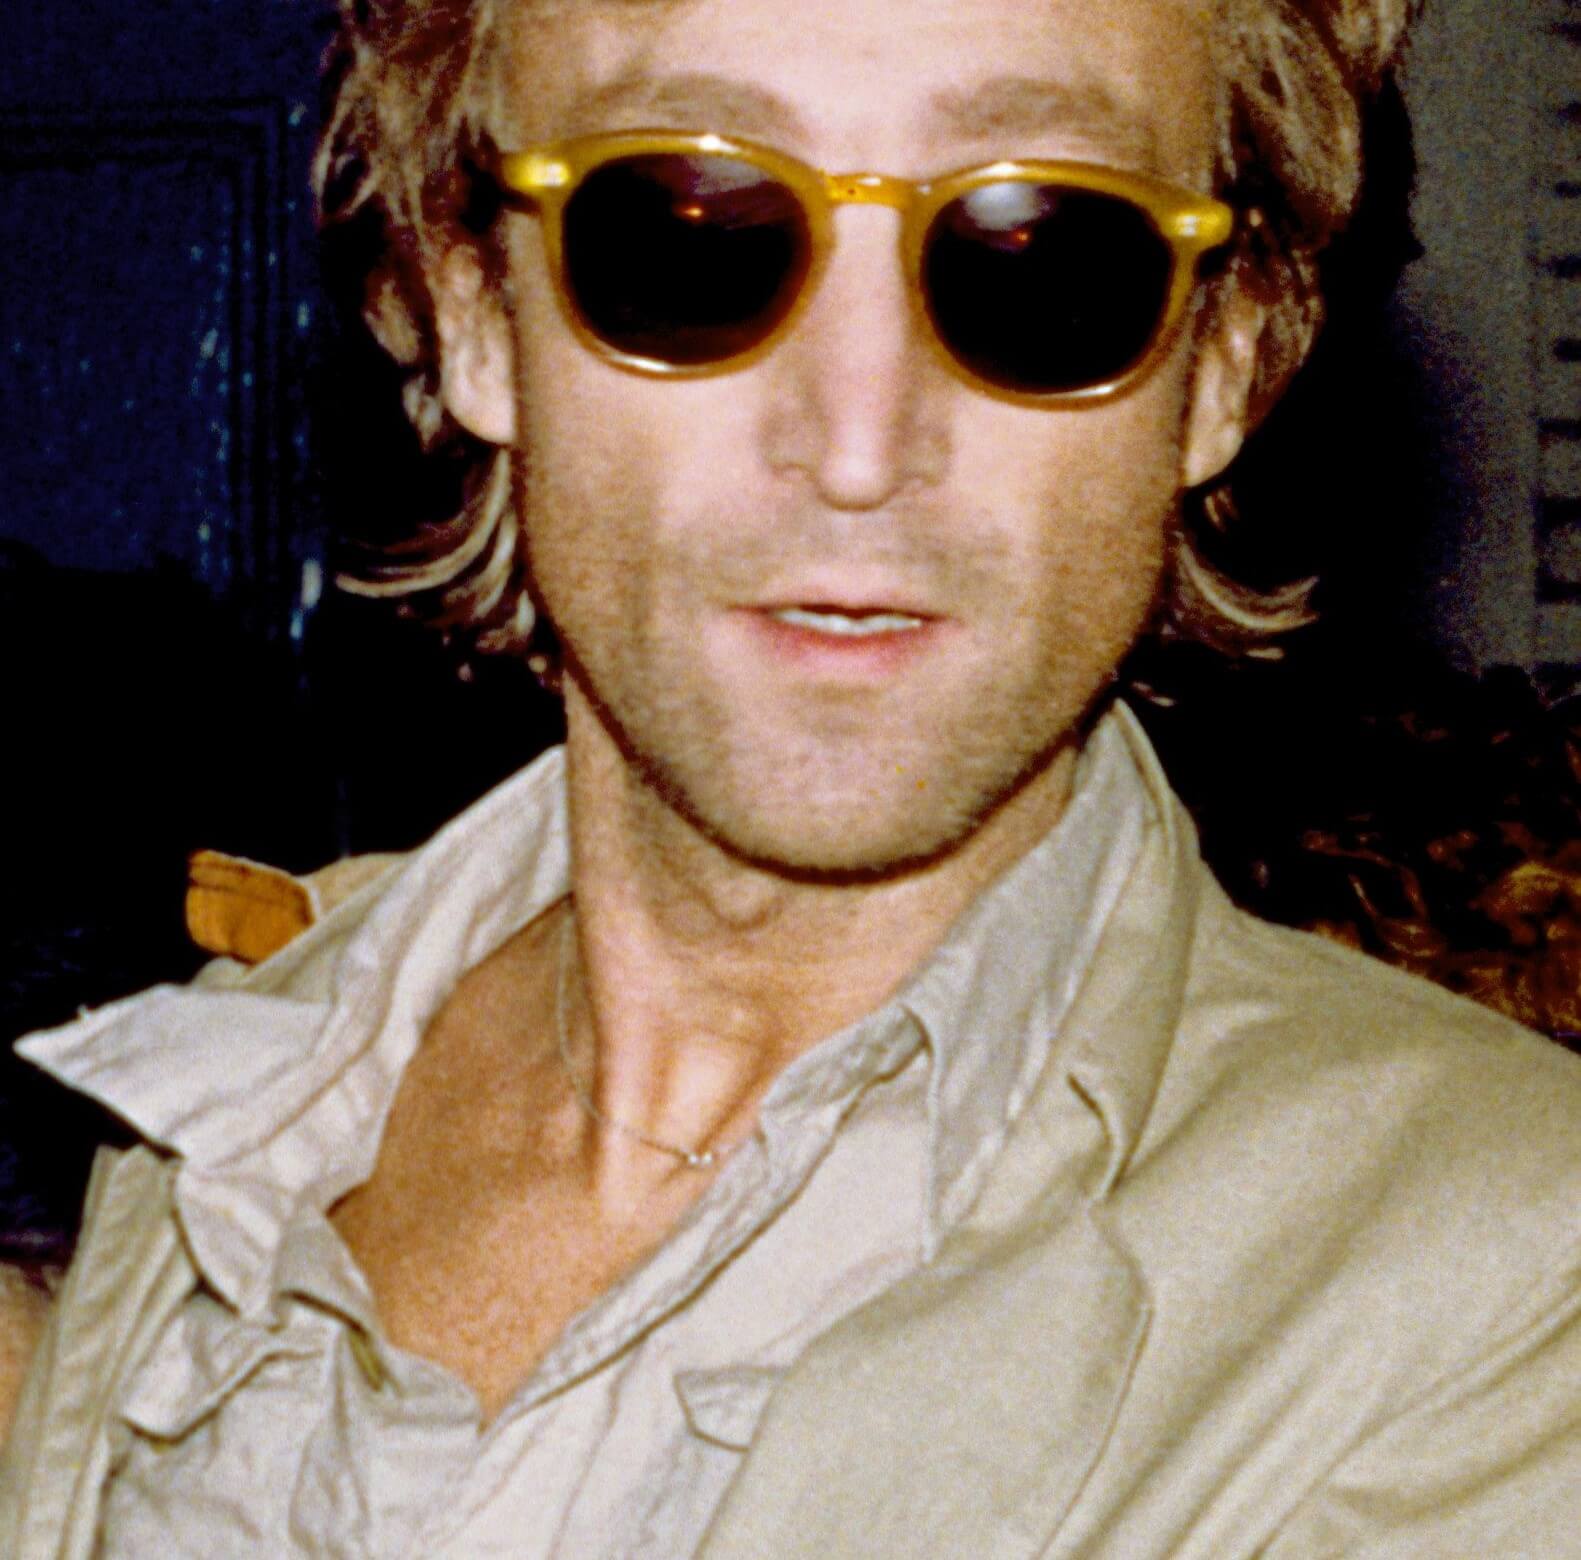 John Lennon wearing dark glasses